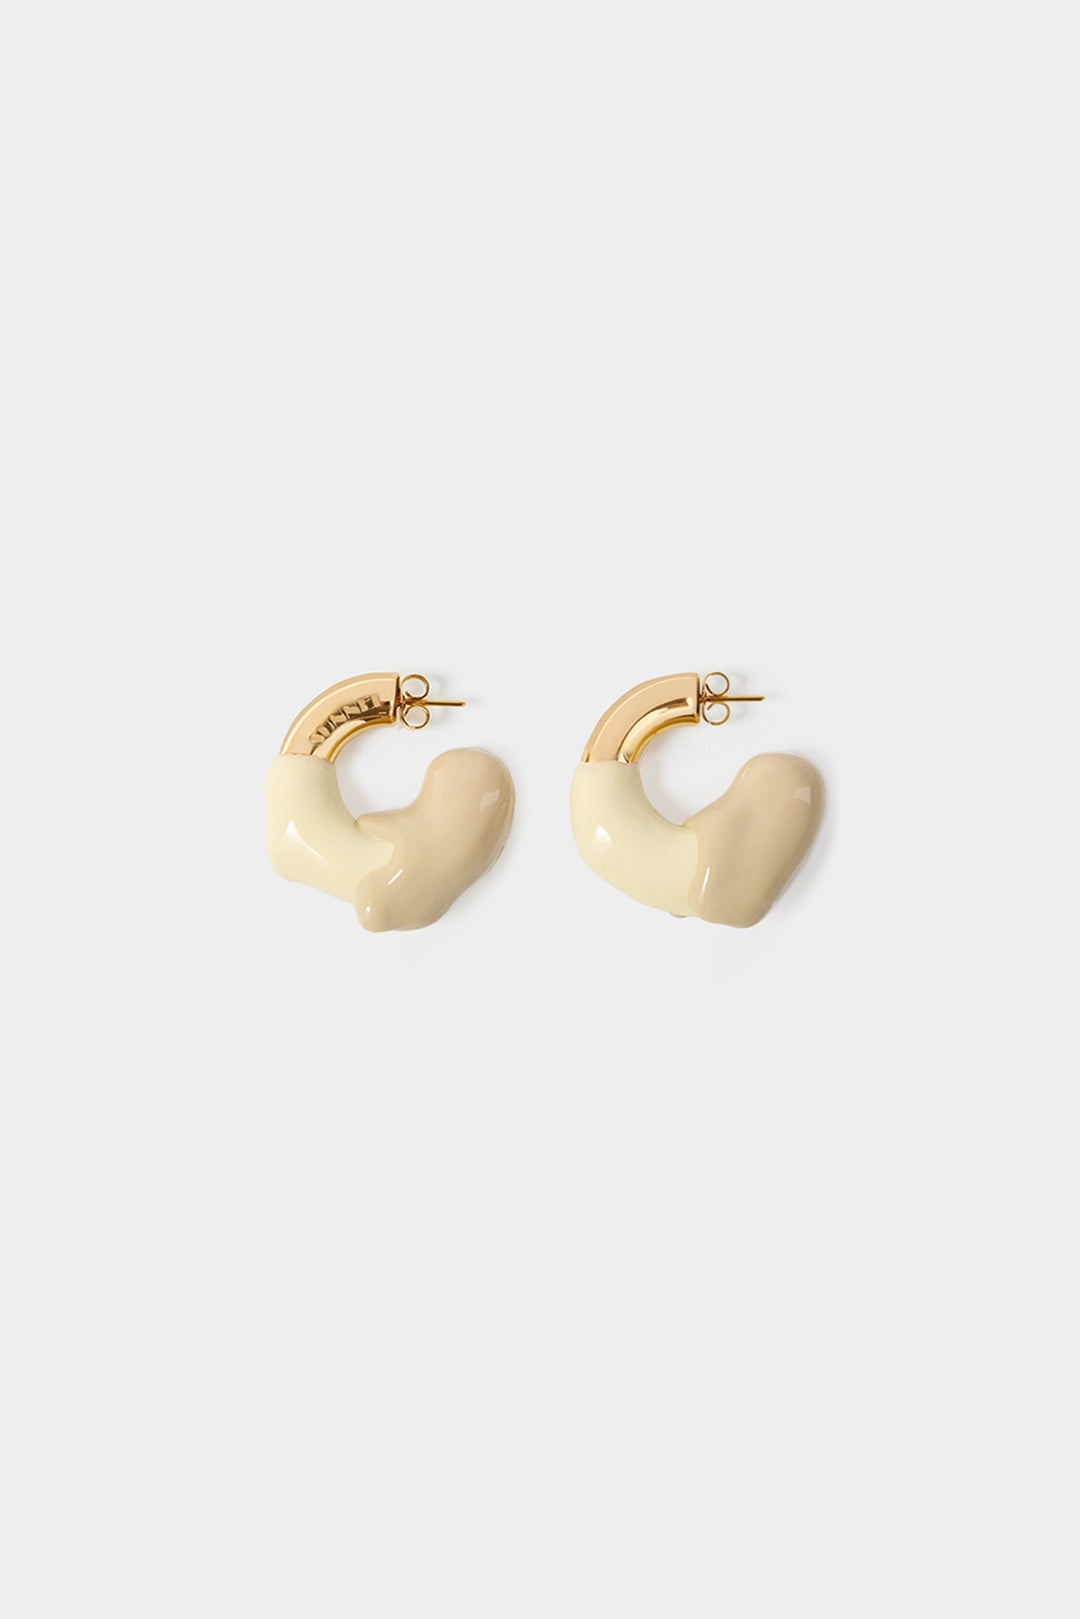 SMALL RUBBERIZED EARRINGS GOLD / cream & beige - 1